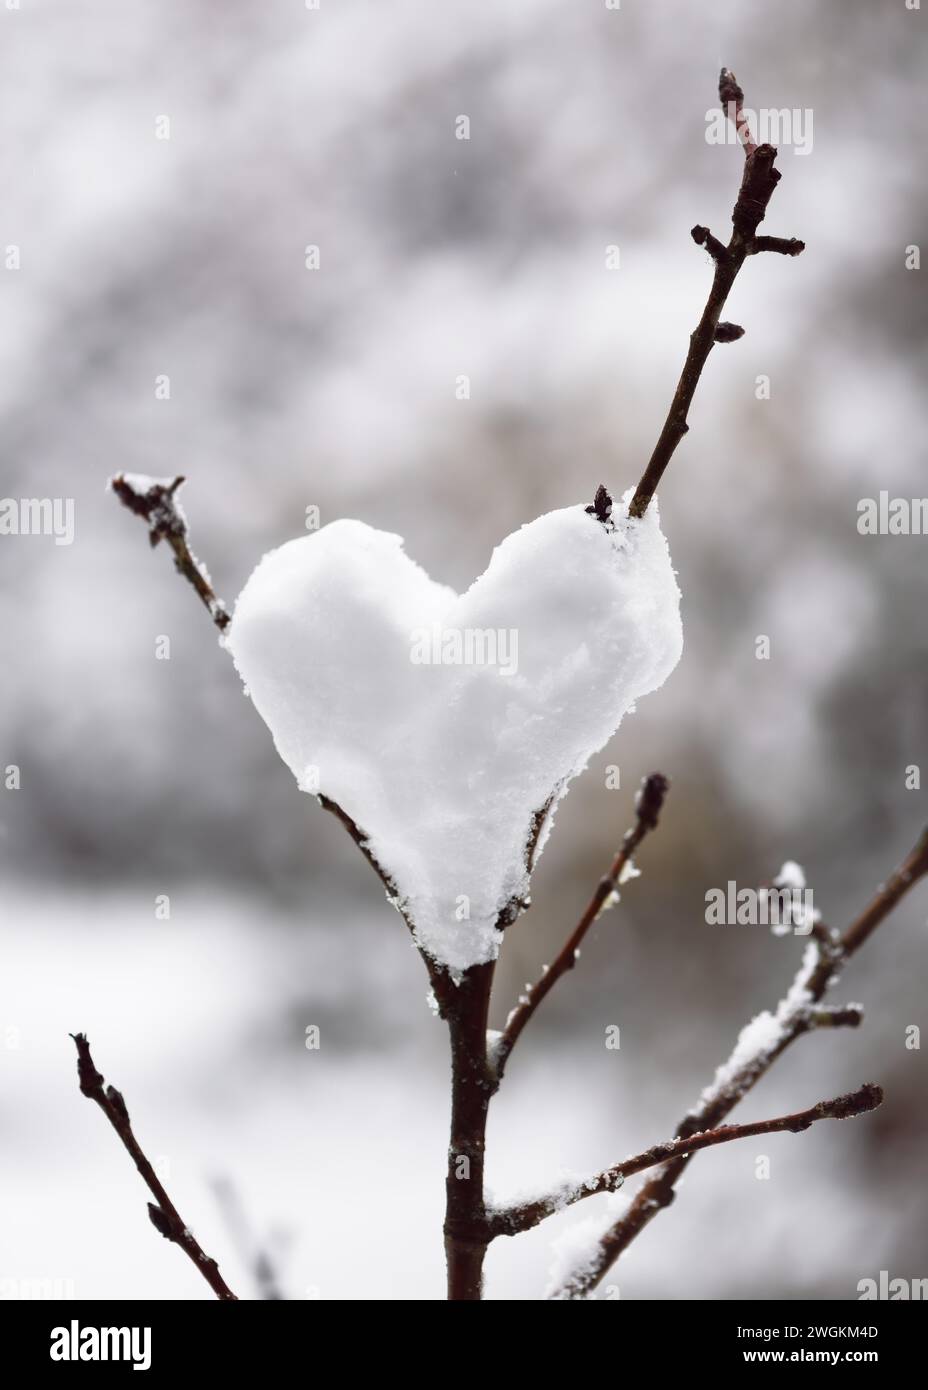 Boule de neige en forme de coeur suspendu dans un arbre dans le jardin d'hiver. Saint Valentin, amour ou concept romantique. Copier l'espace. Banque D'Images